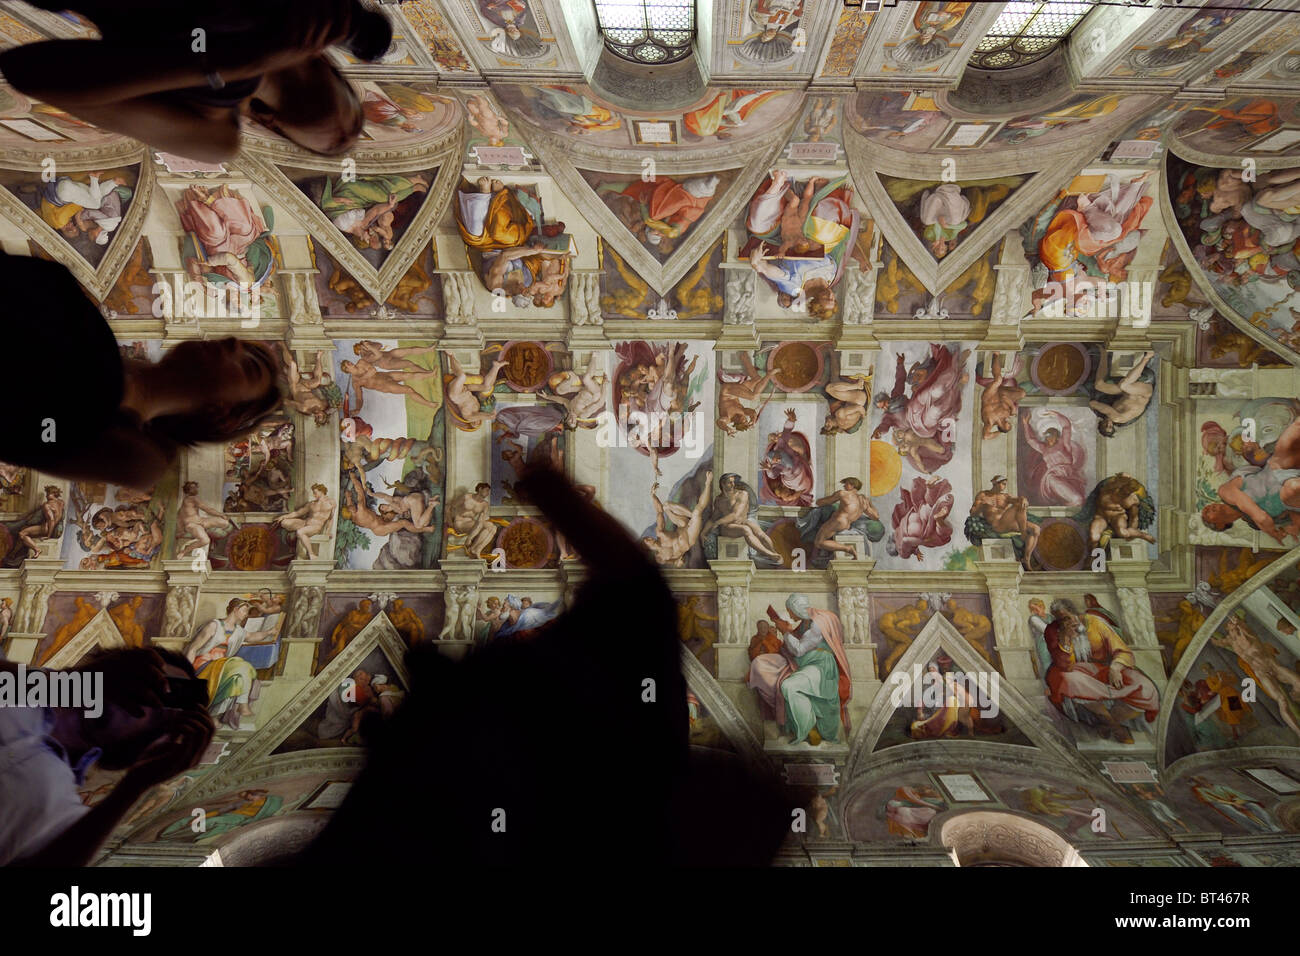 Roma. Italia. Los turistas visitan la Capilla Sixtina en los Museos Vaticanos. Foto de stock